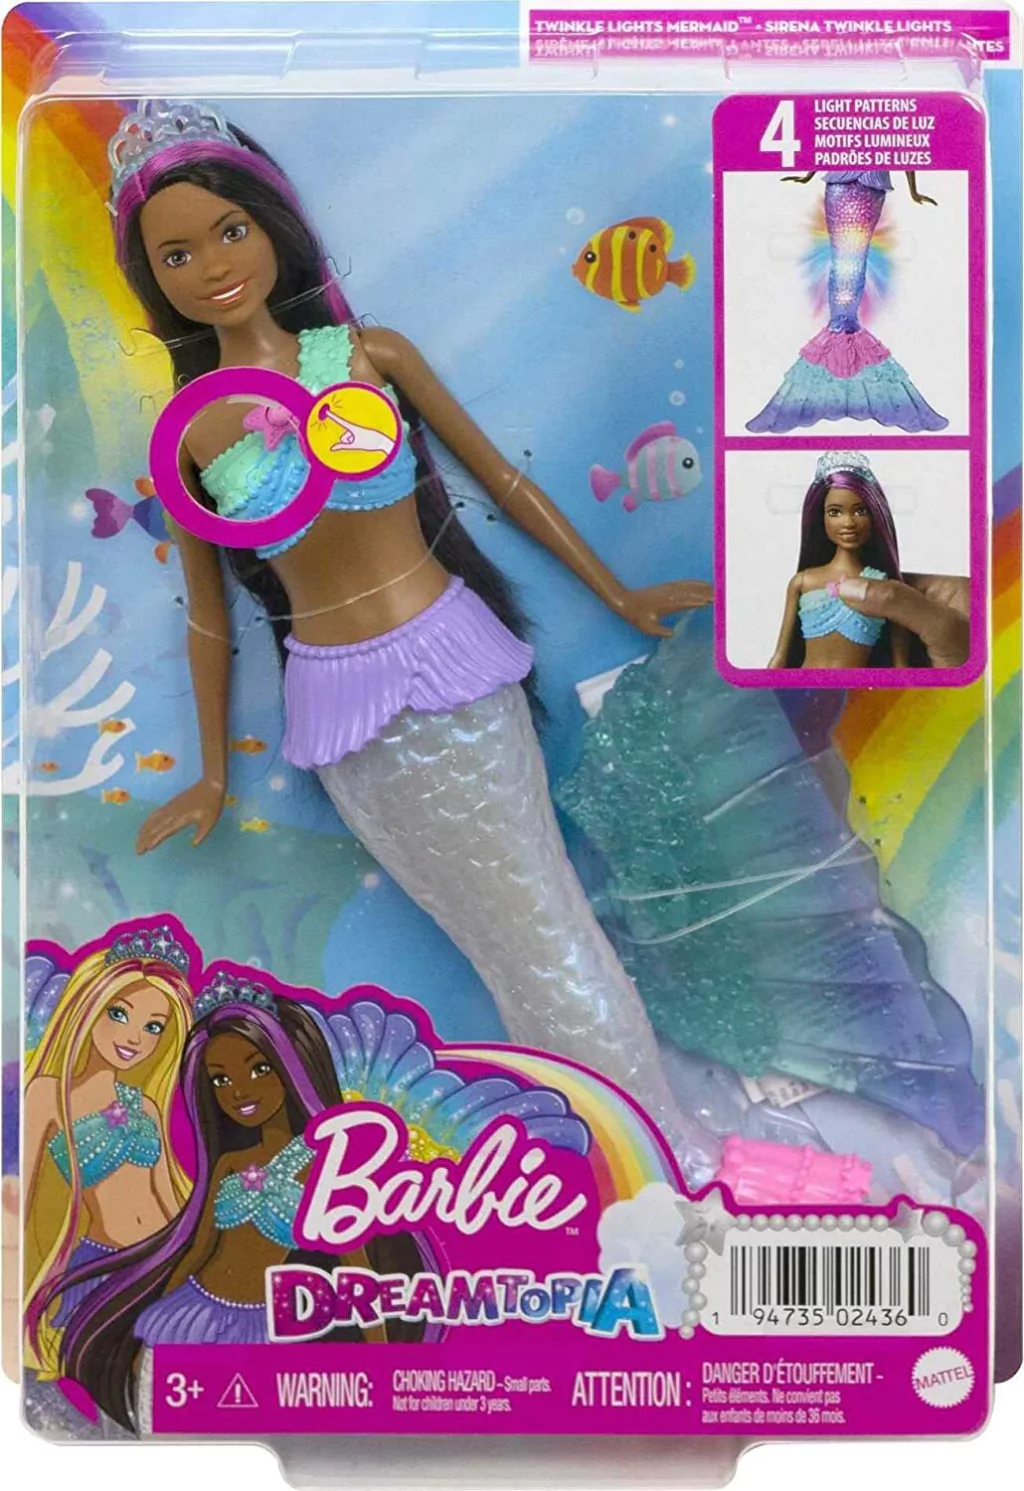 Muñeca Barbie de sirena con cola iluminada parpadeante activada por agua,  juguetes Barbie Dreamtopia sirena